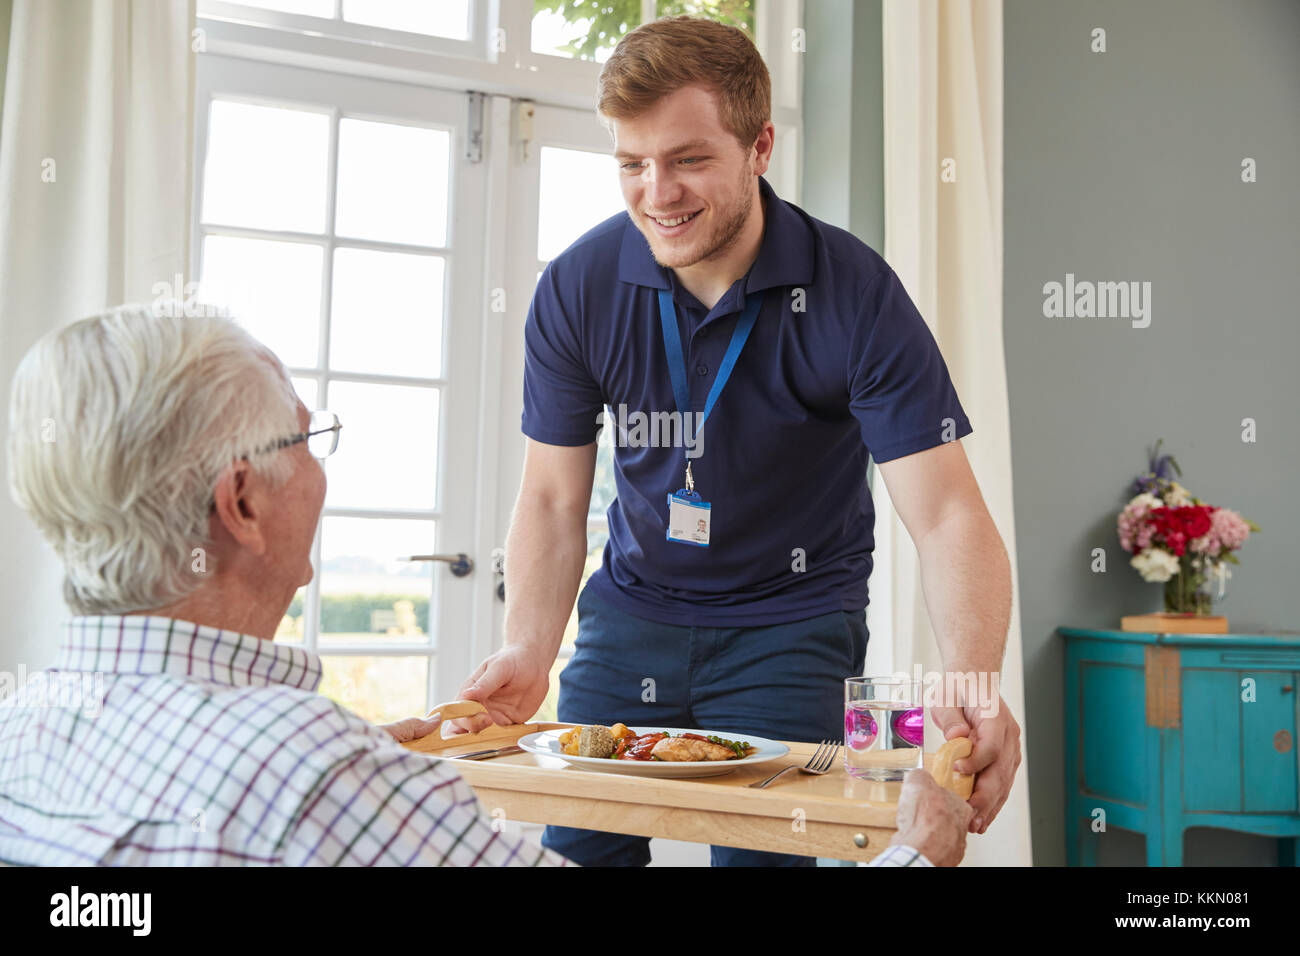 Männliche care worker Abendessen zu einem älteren Mann bei sich zu Hause serviert Stockfoto